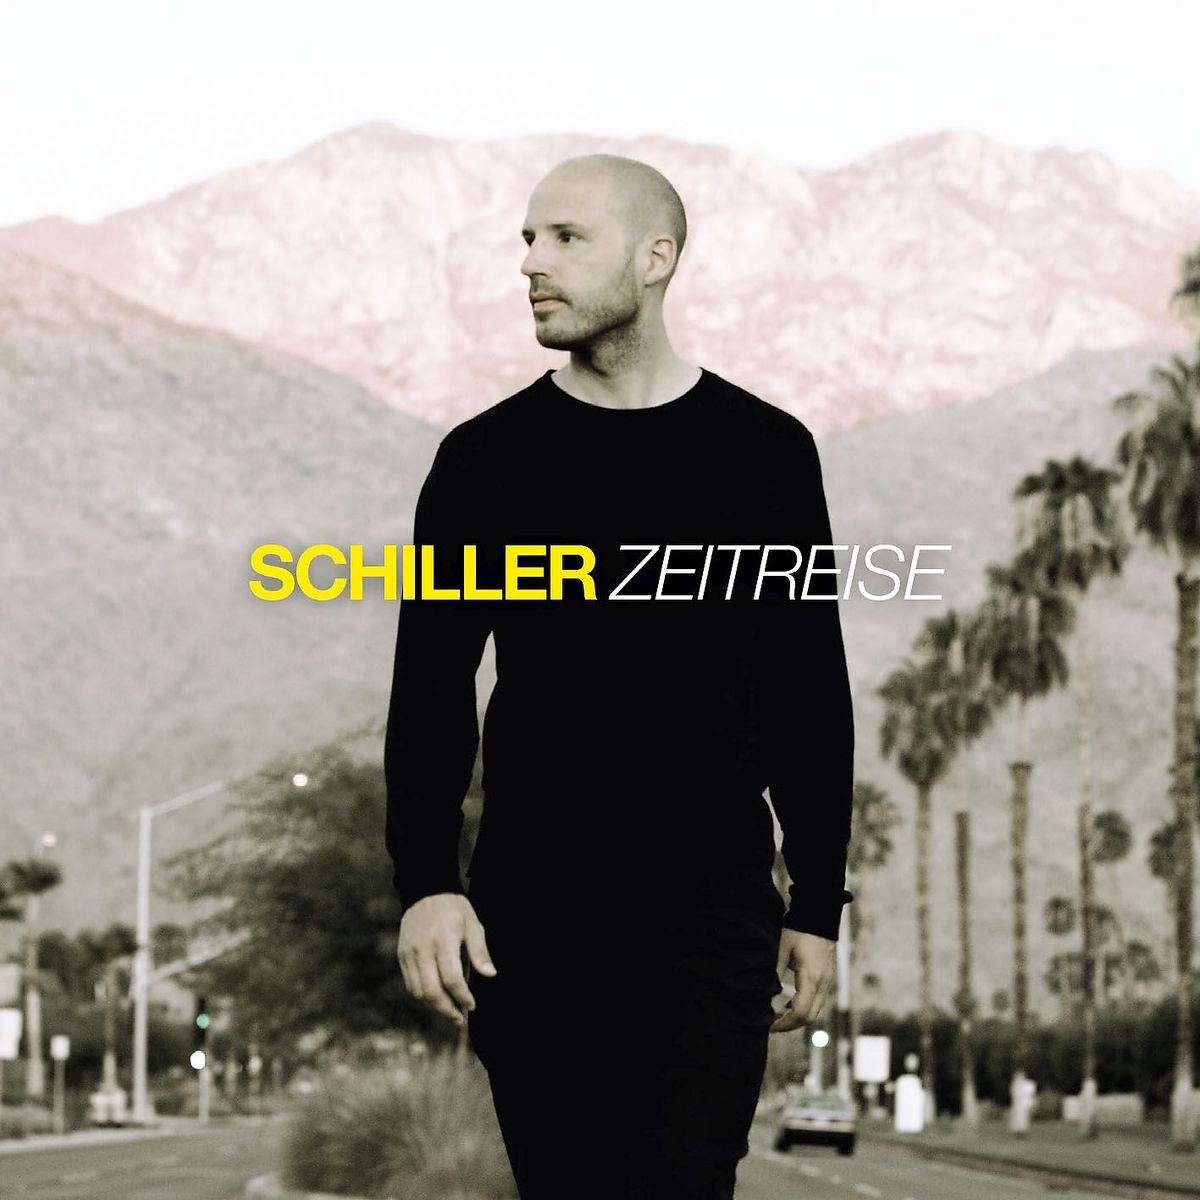 Zeitreise - Das Beste von Schiller - ©Universal Music